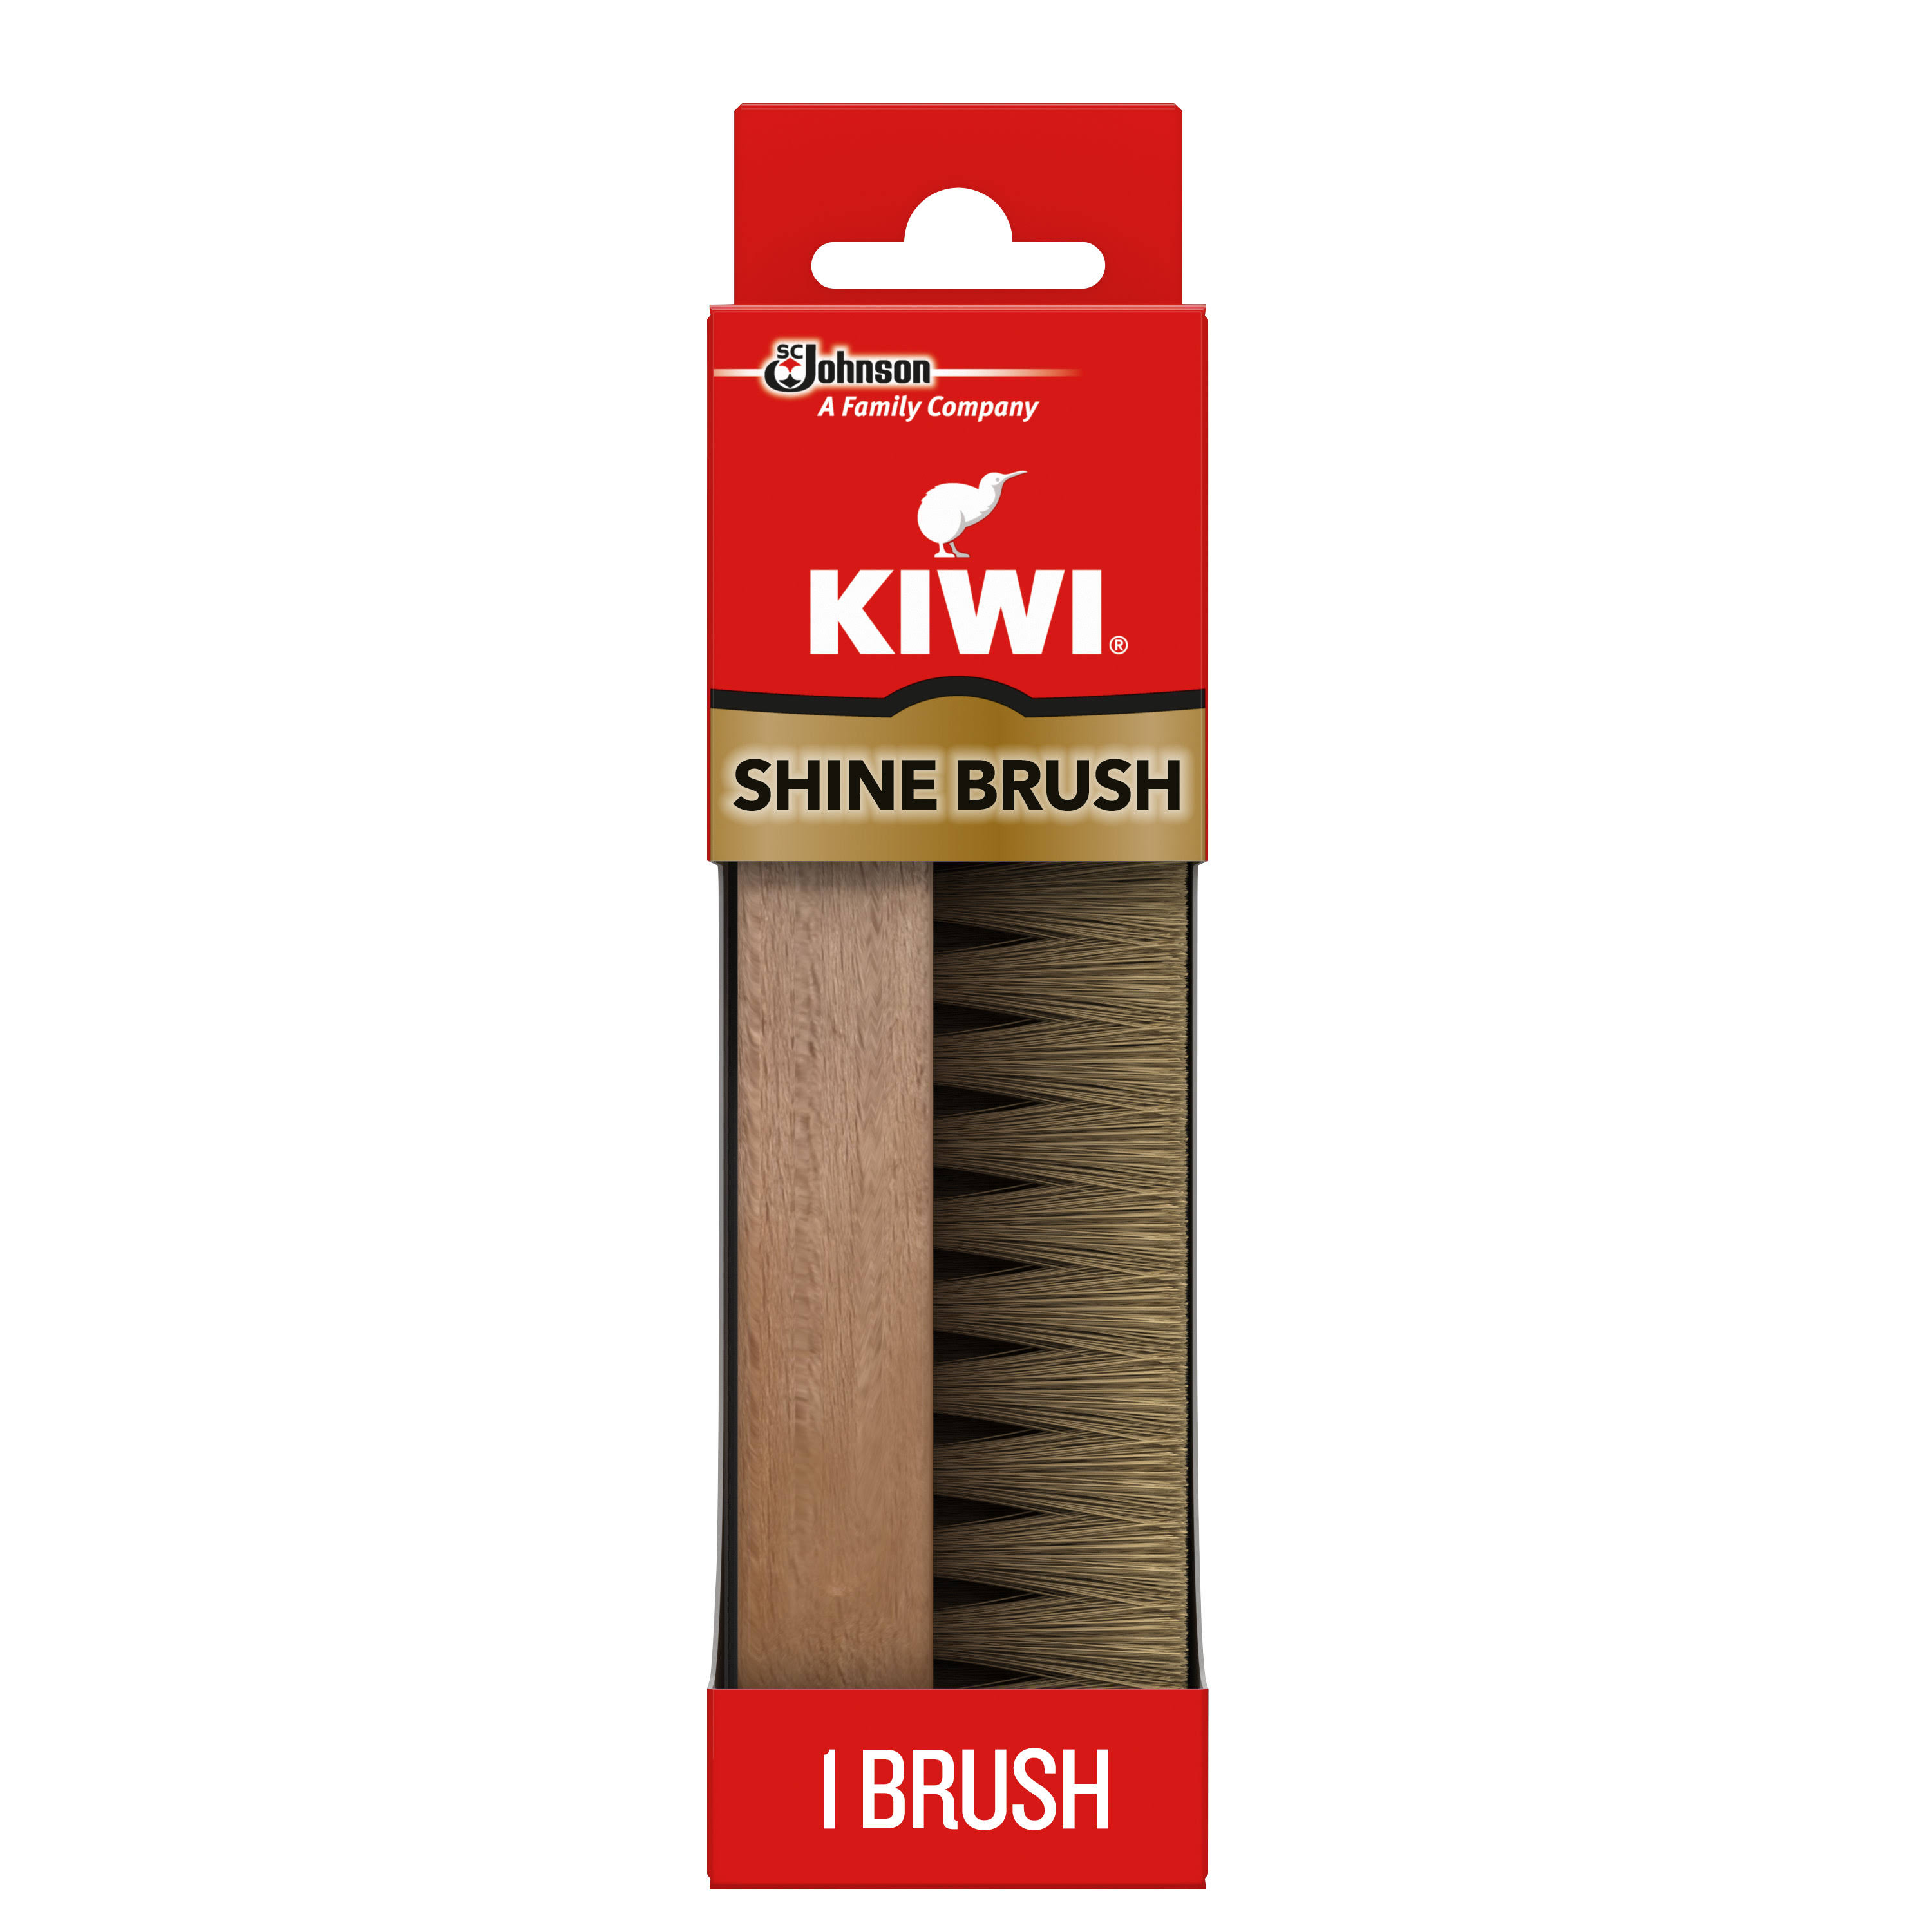 Kiwi Shine Brush